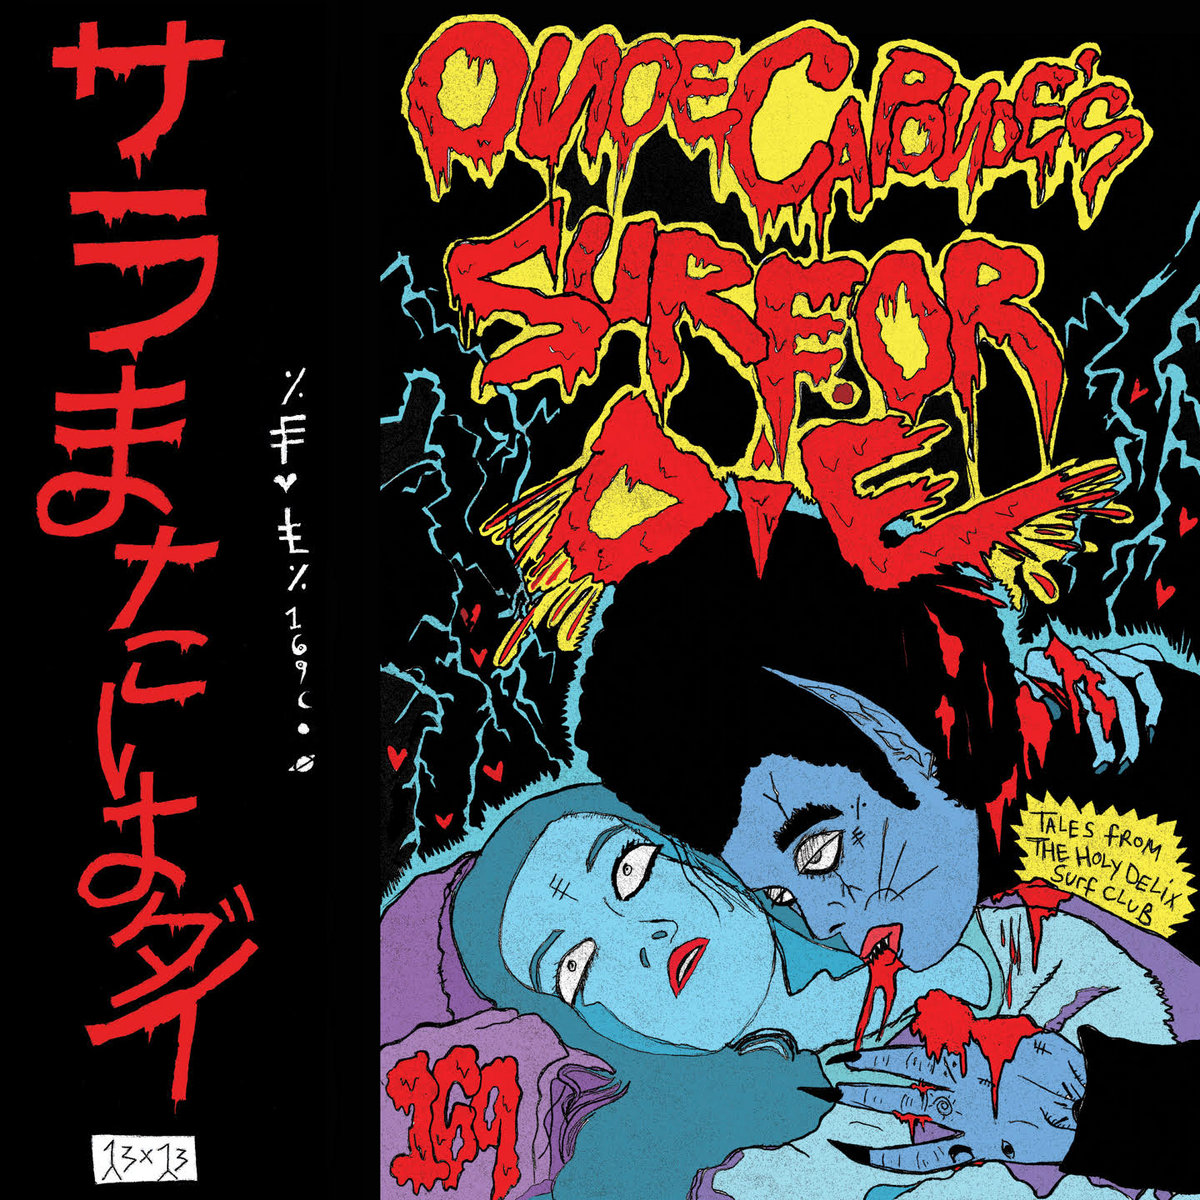 Onoe Caponoe — Lost the Love cover artwork